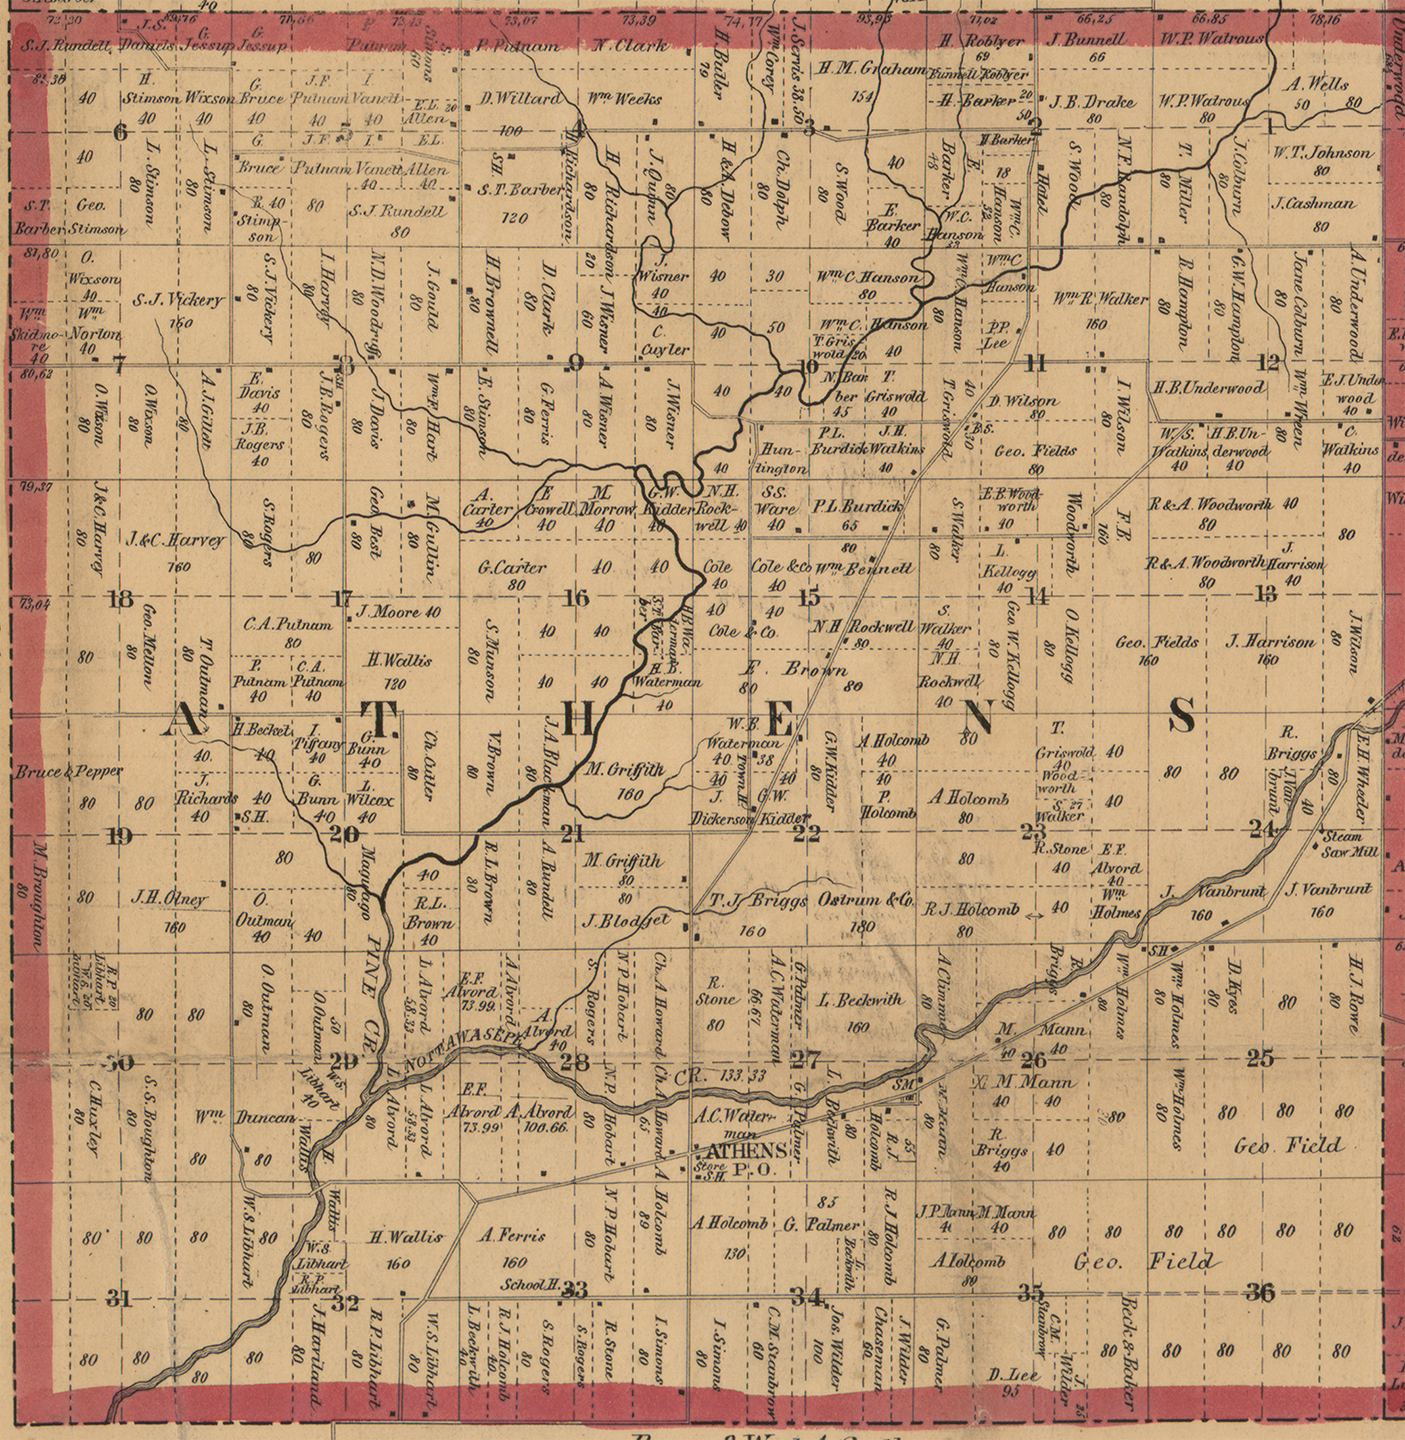 1858 Athens Township, Michigan landownership map